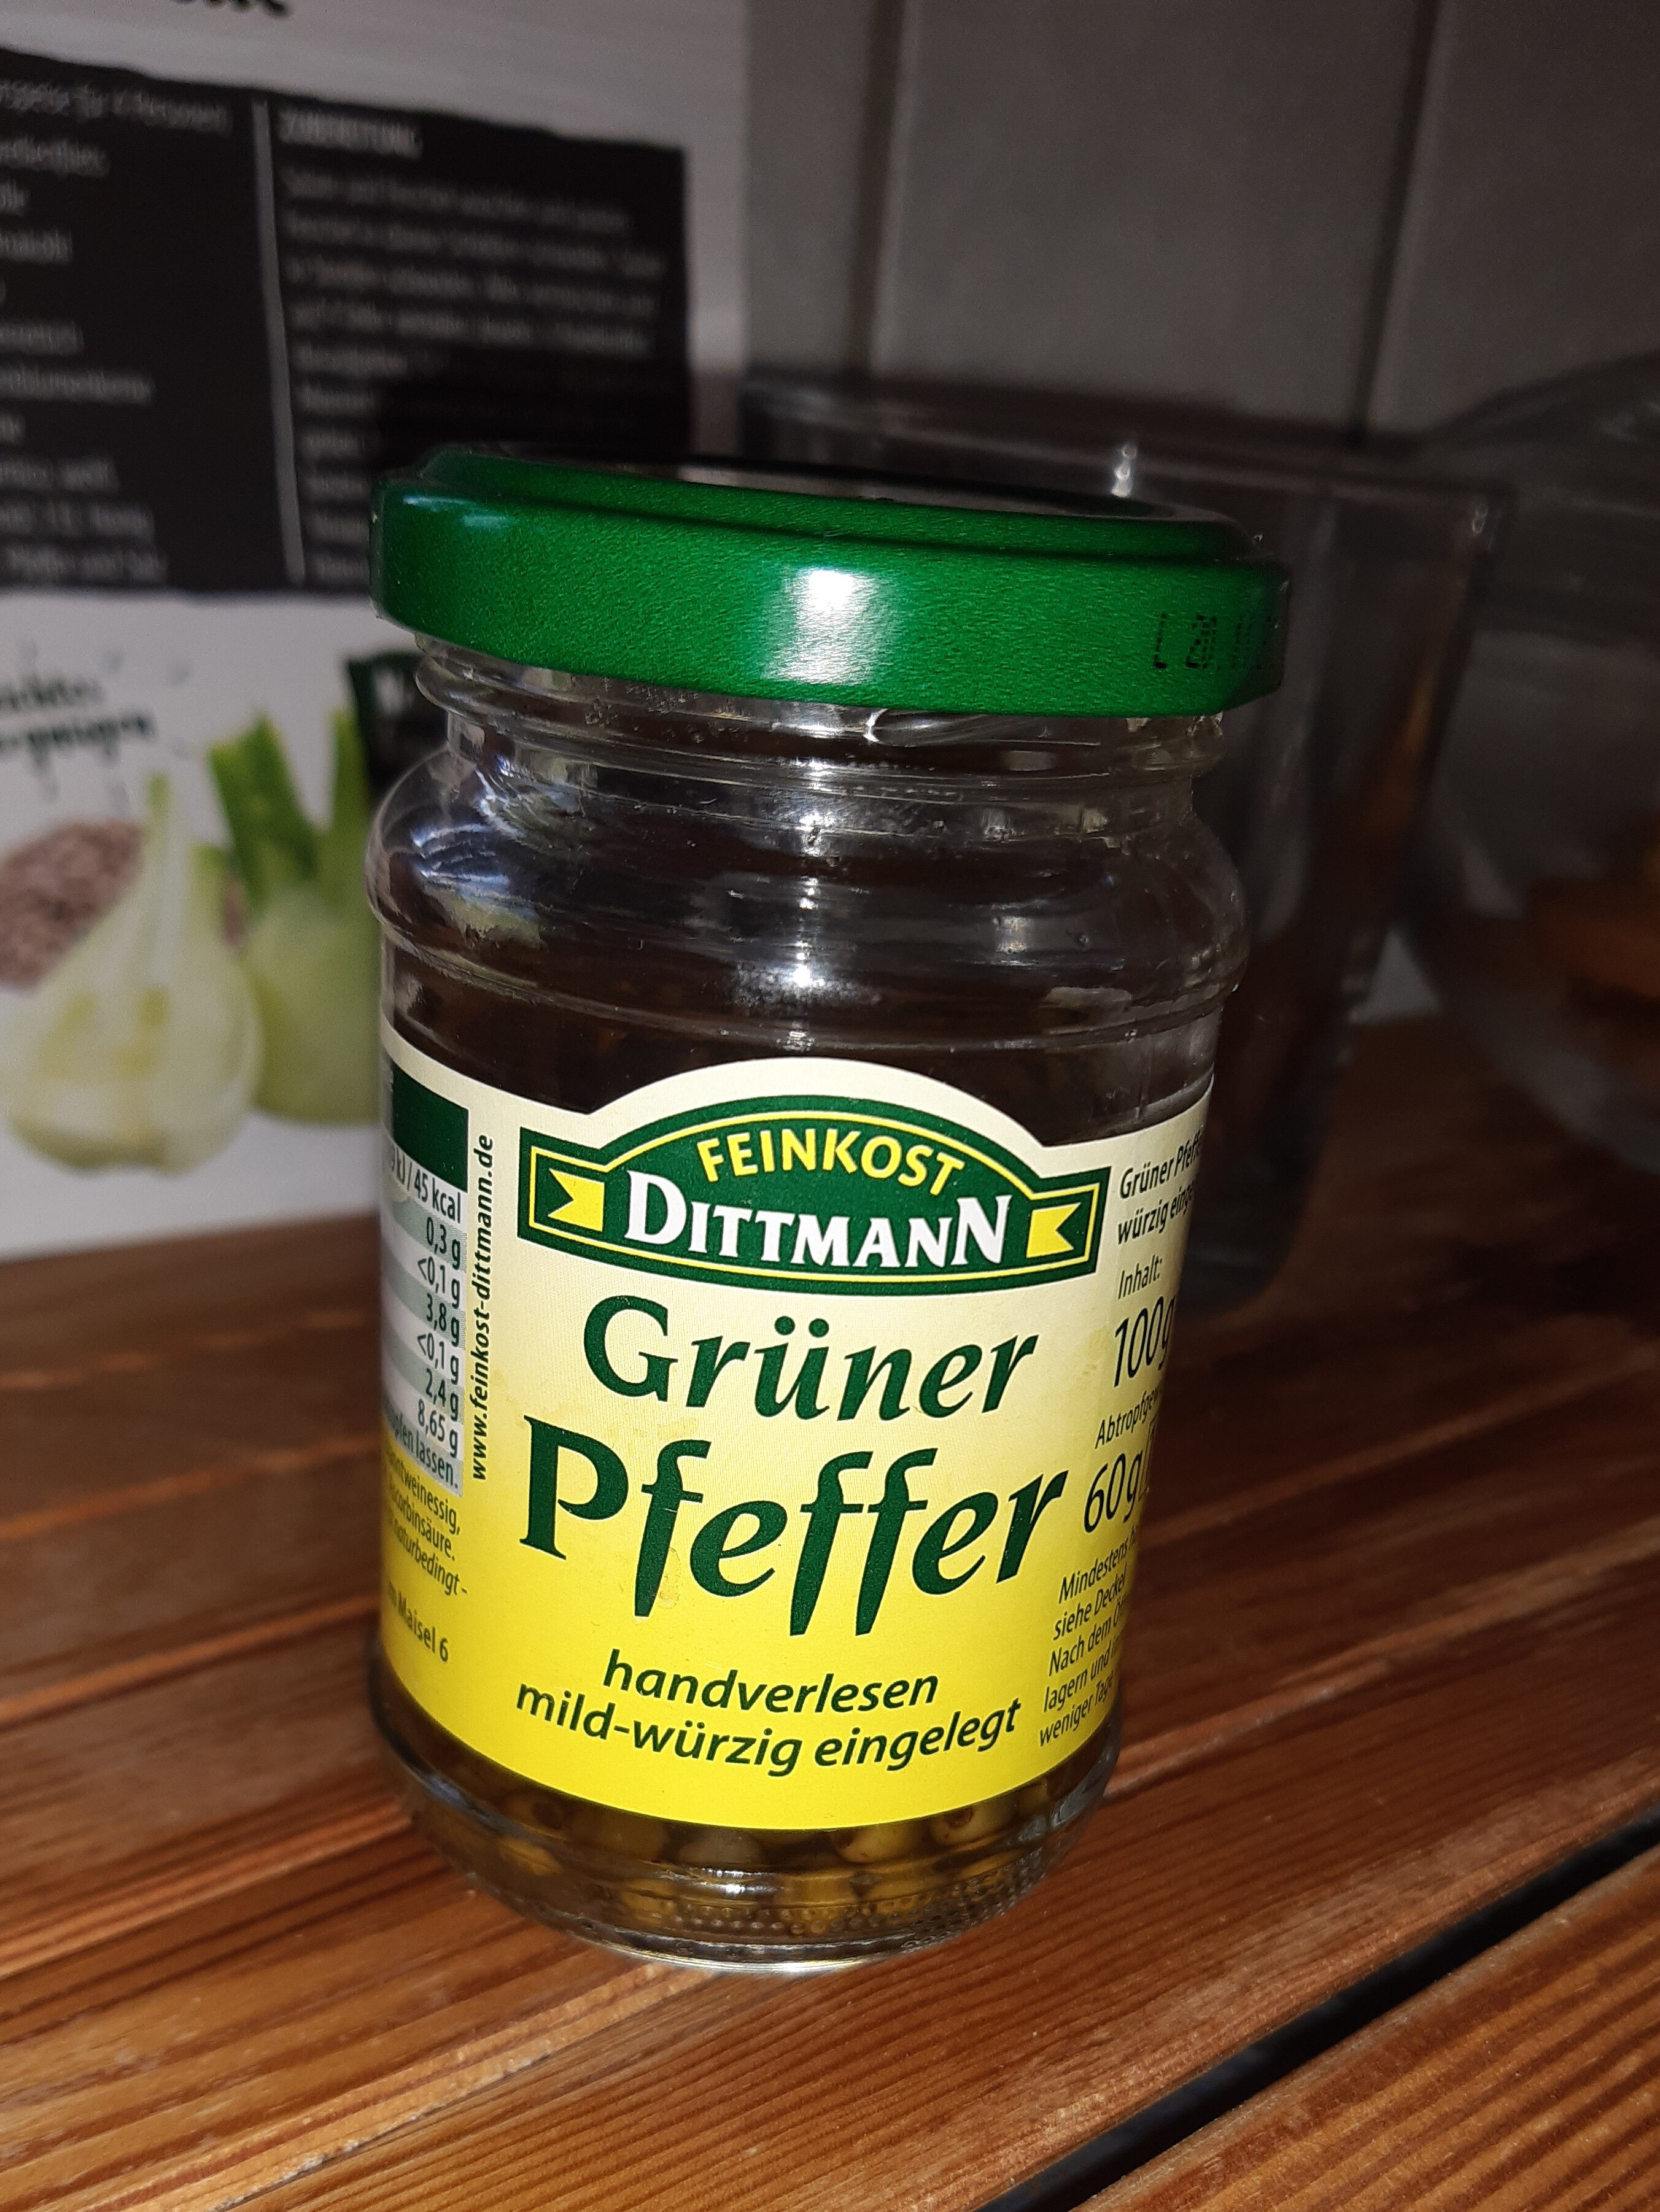 Pfeffer, Eingelegter Grüner Pfeffer - Produkt